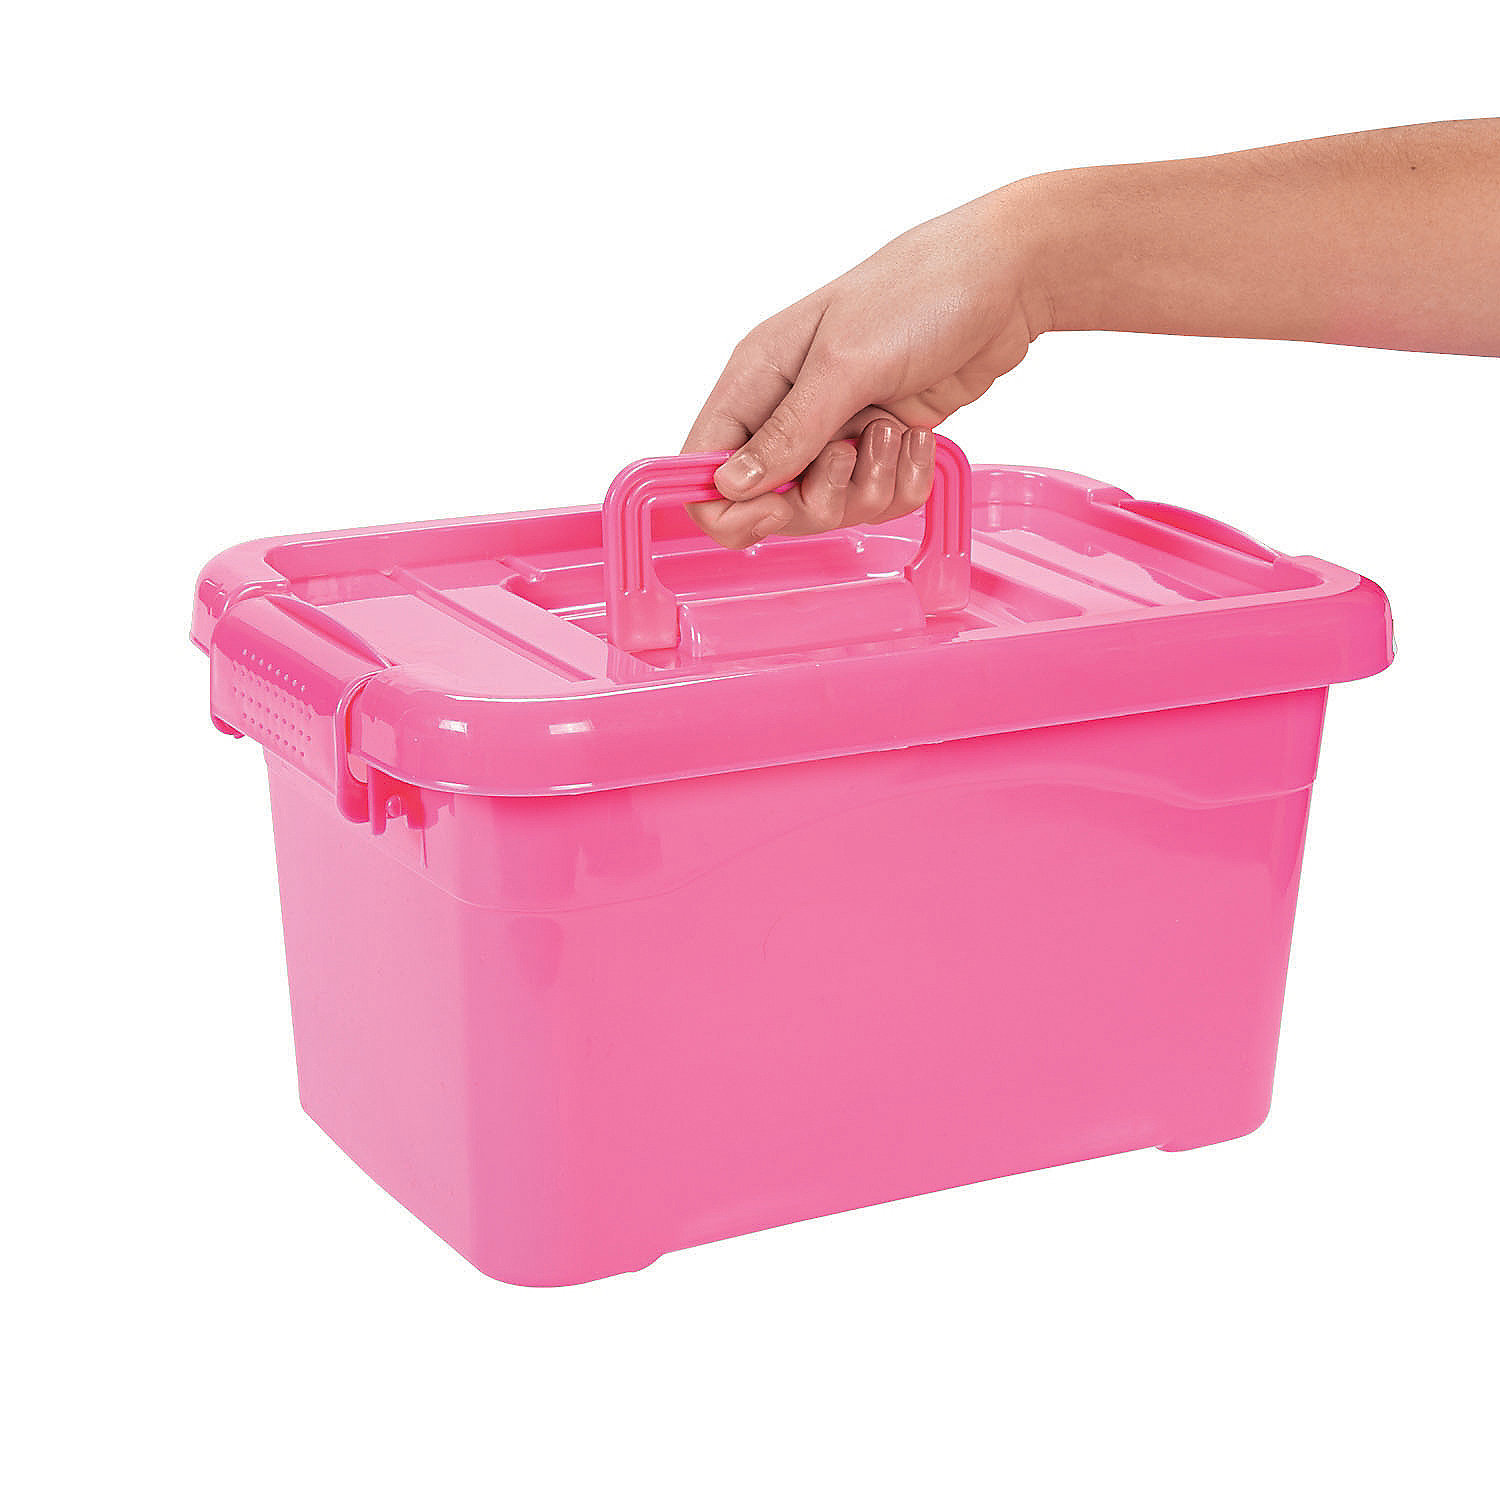 Hot Pink Large Locking Storage Bins With Lids